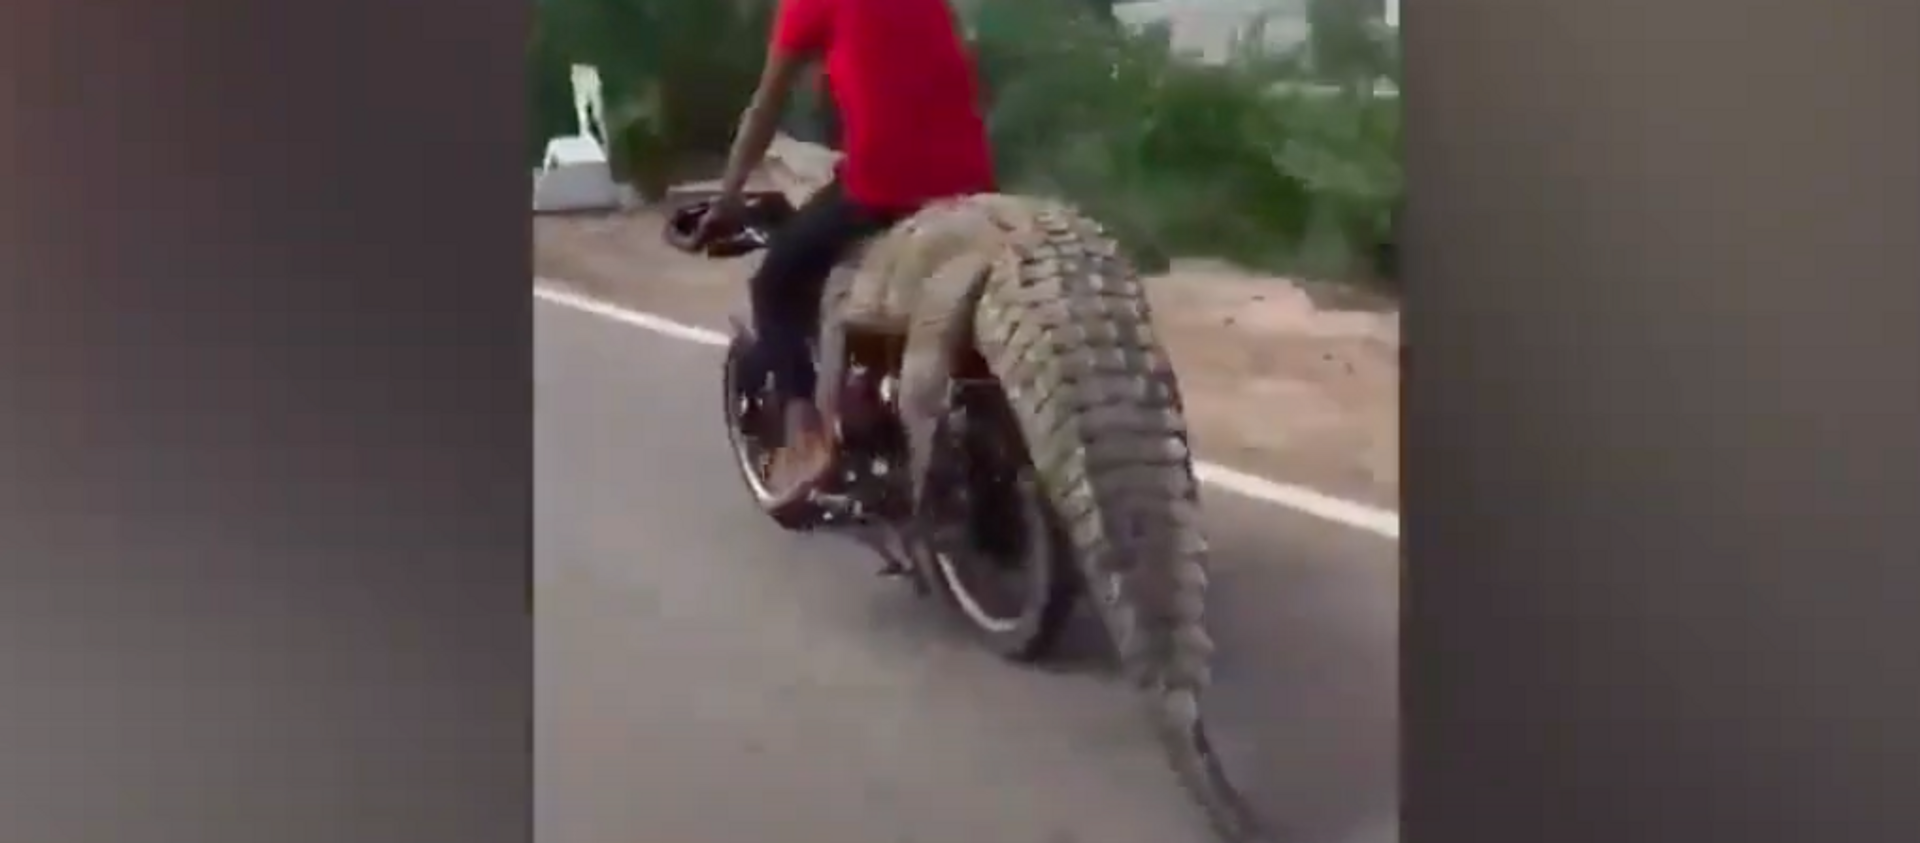 Người đàn ông ngồi trên con cá sấu bị trói vào xe máy lọt vào video. - Sputnik Việt Nam, 1920, 29.09.2020